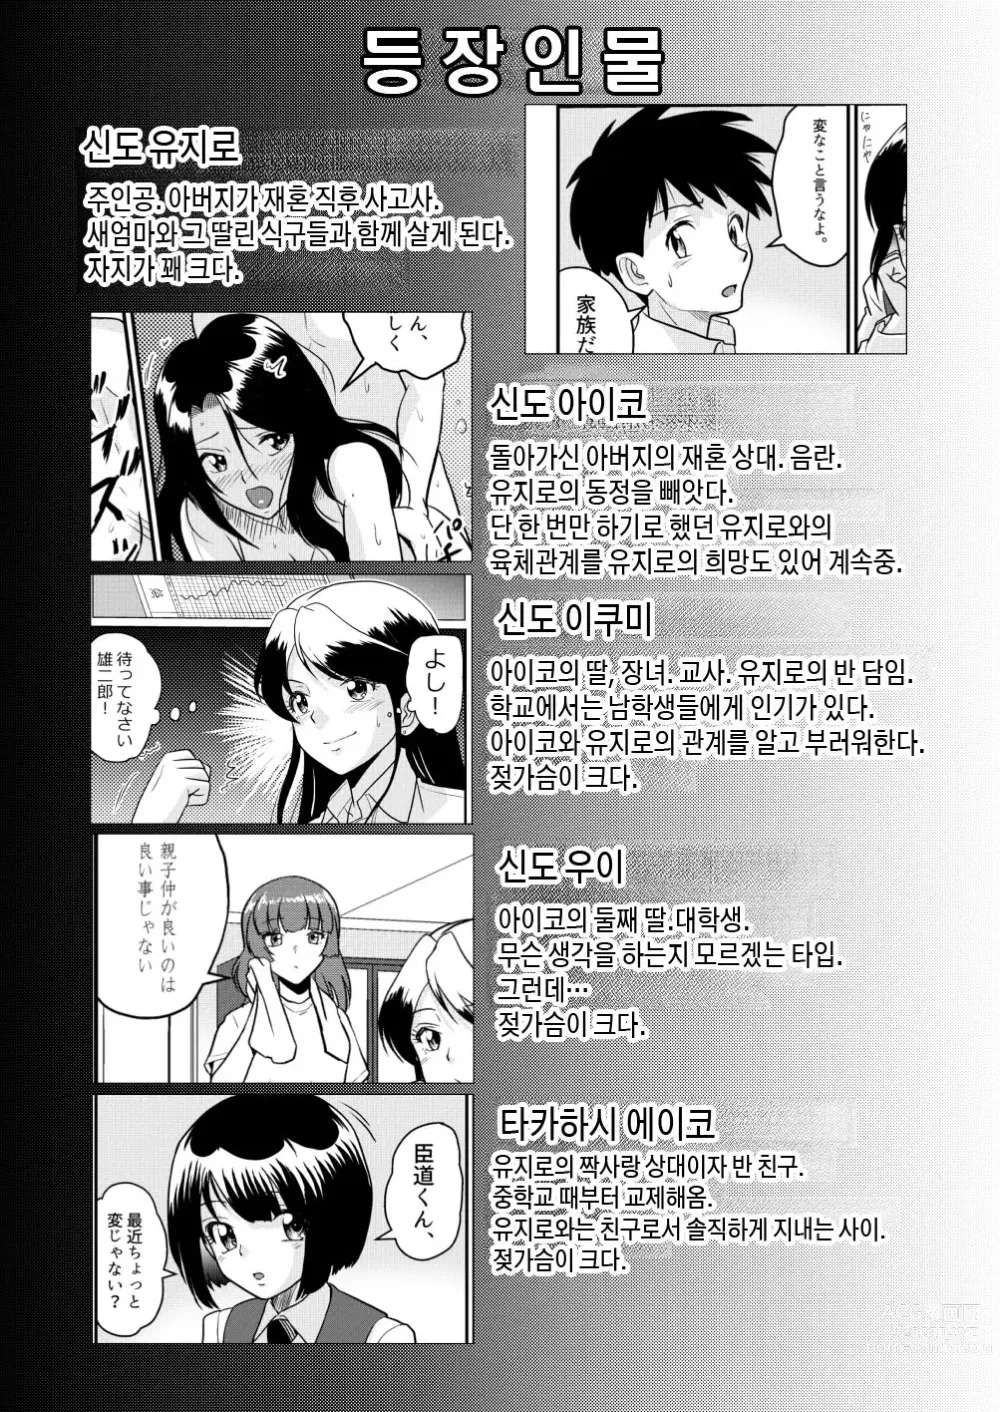 Page 2 of manga 새가족2 - 지금은 선생님이라고 부르지 마